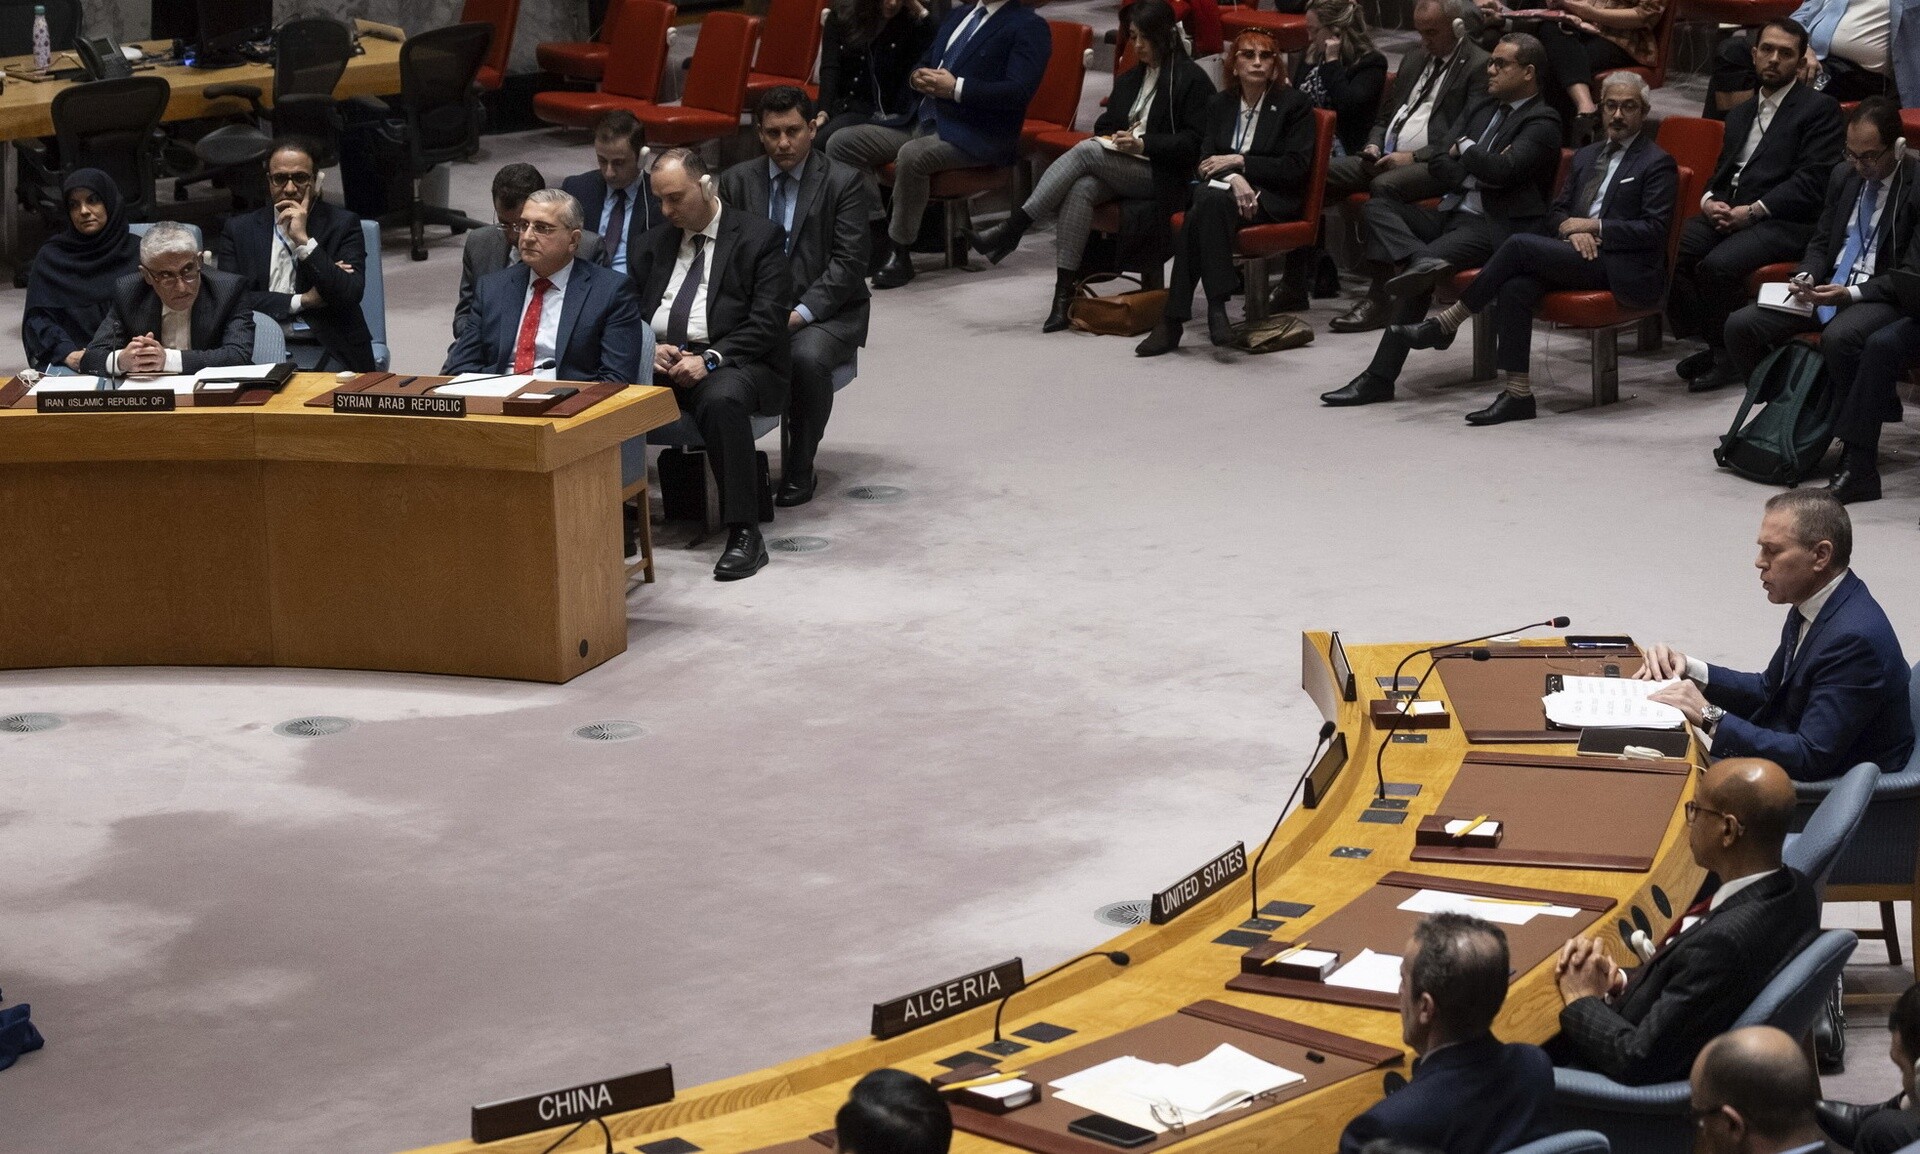 Σκληρό μπρα ντε φερ και αλληλοκατηγορίες μεταξύ Ισραήλ και Ιράν στο Συμβούλιο Ασφαλείας του ΟΗΕ